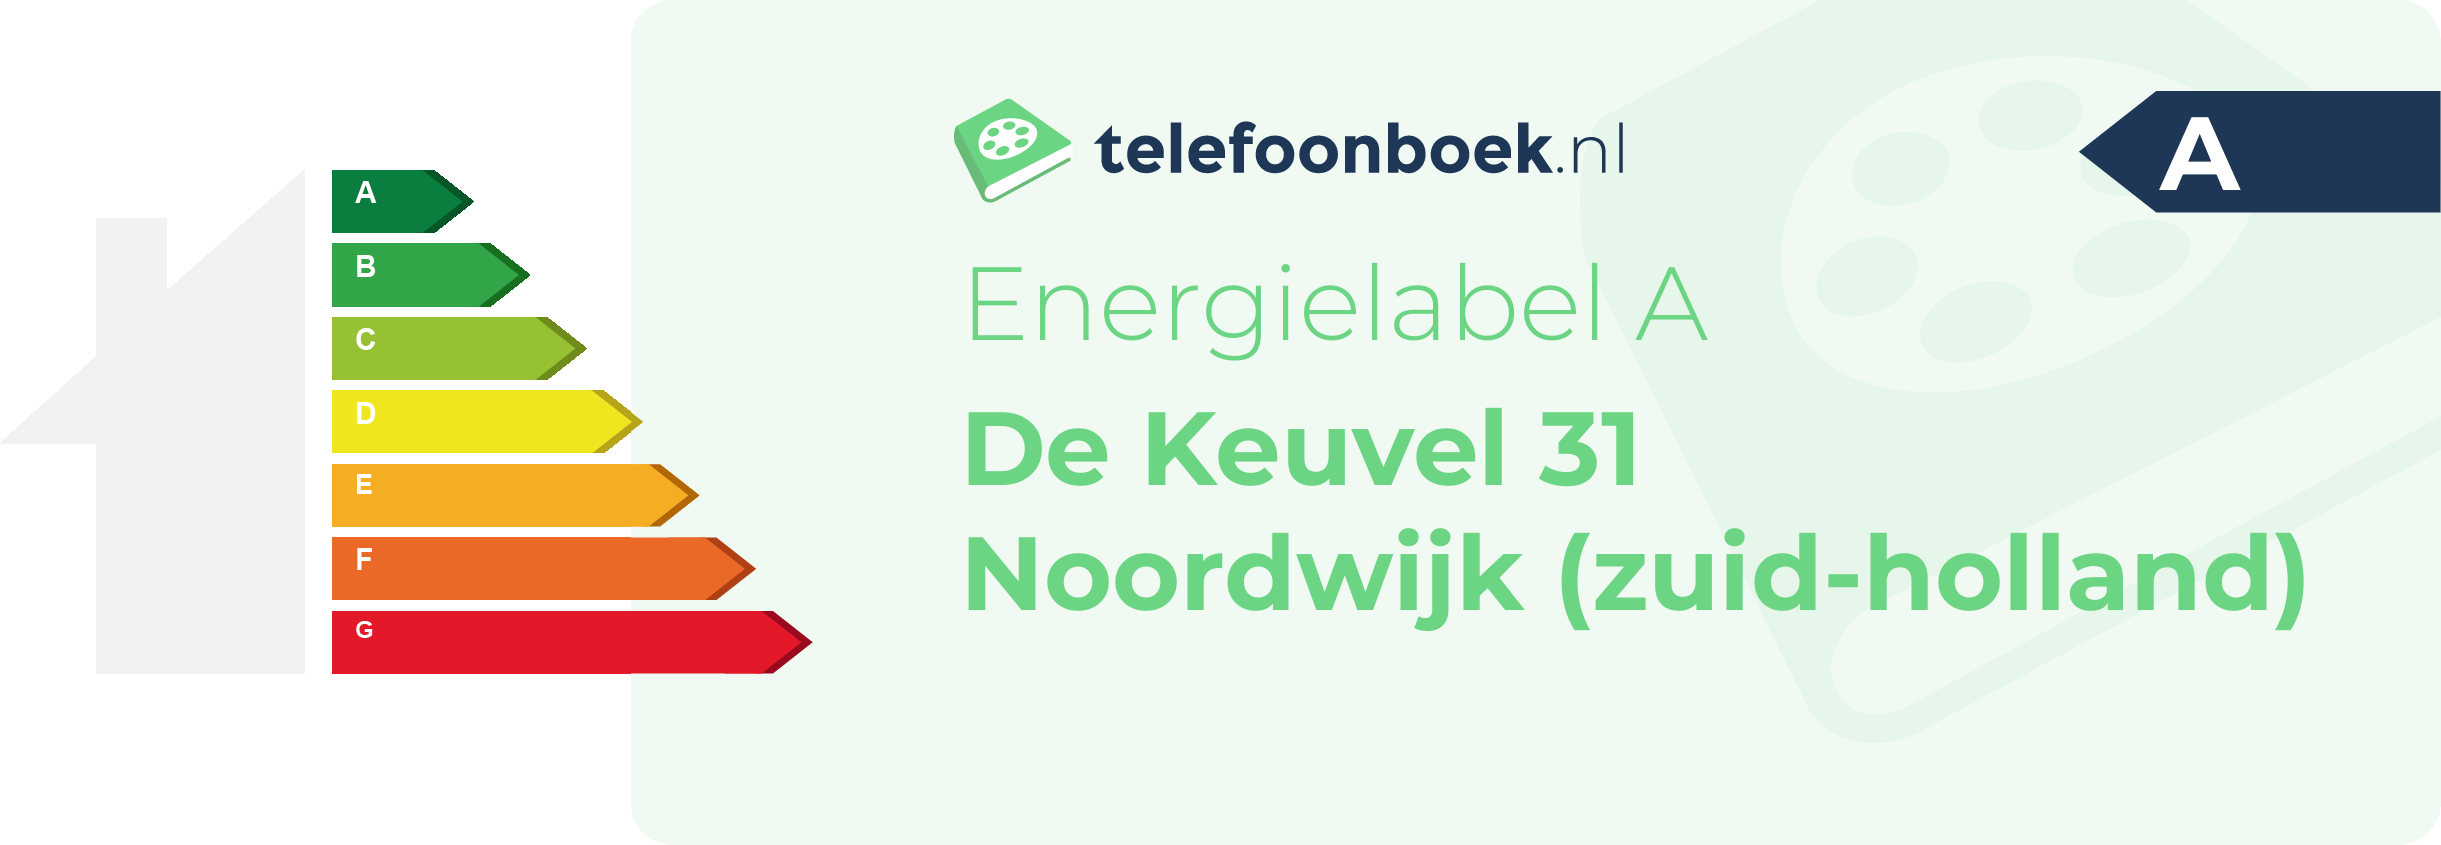 Energielabel De Keuvel 31 Noordwijk (Zuid-Holland)